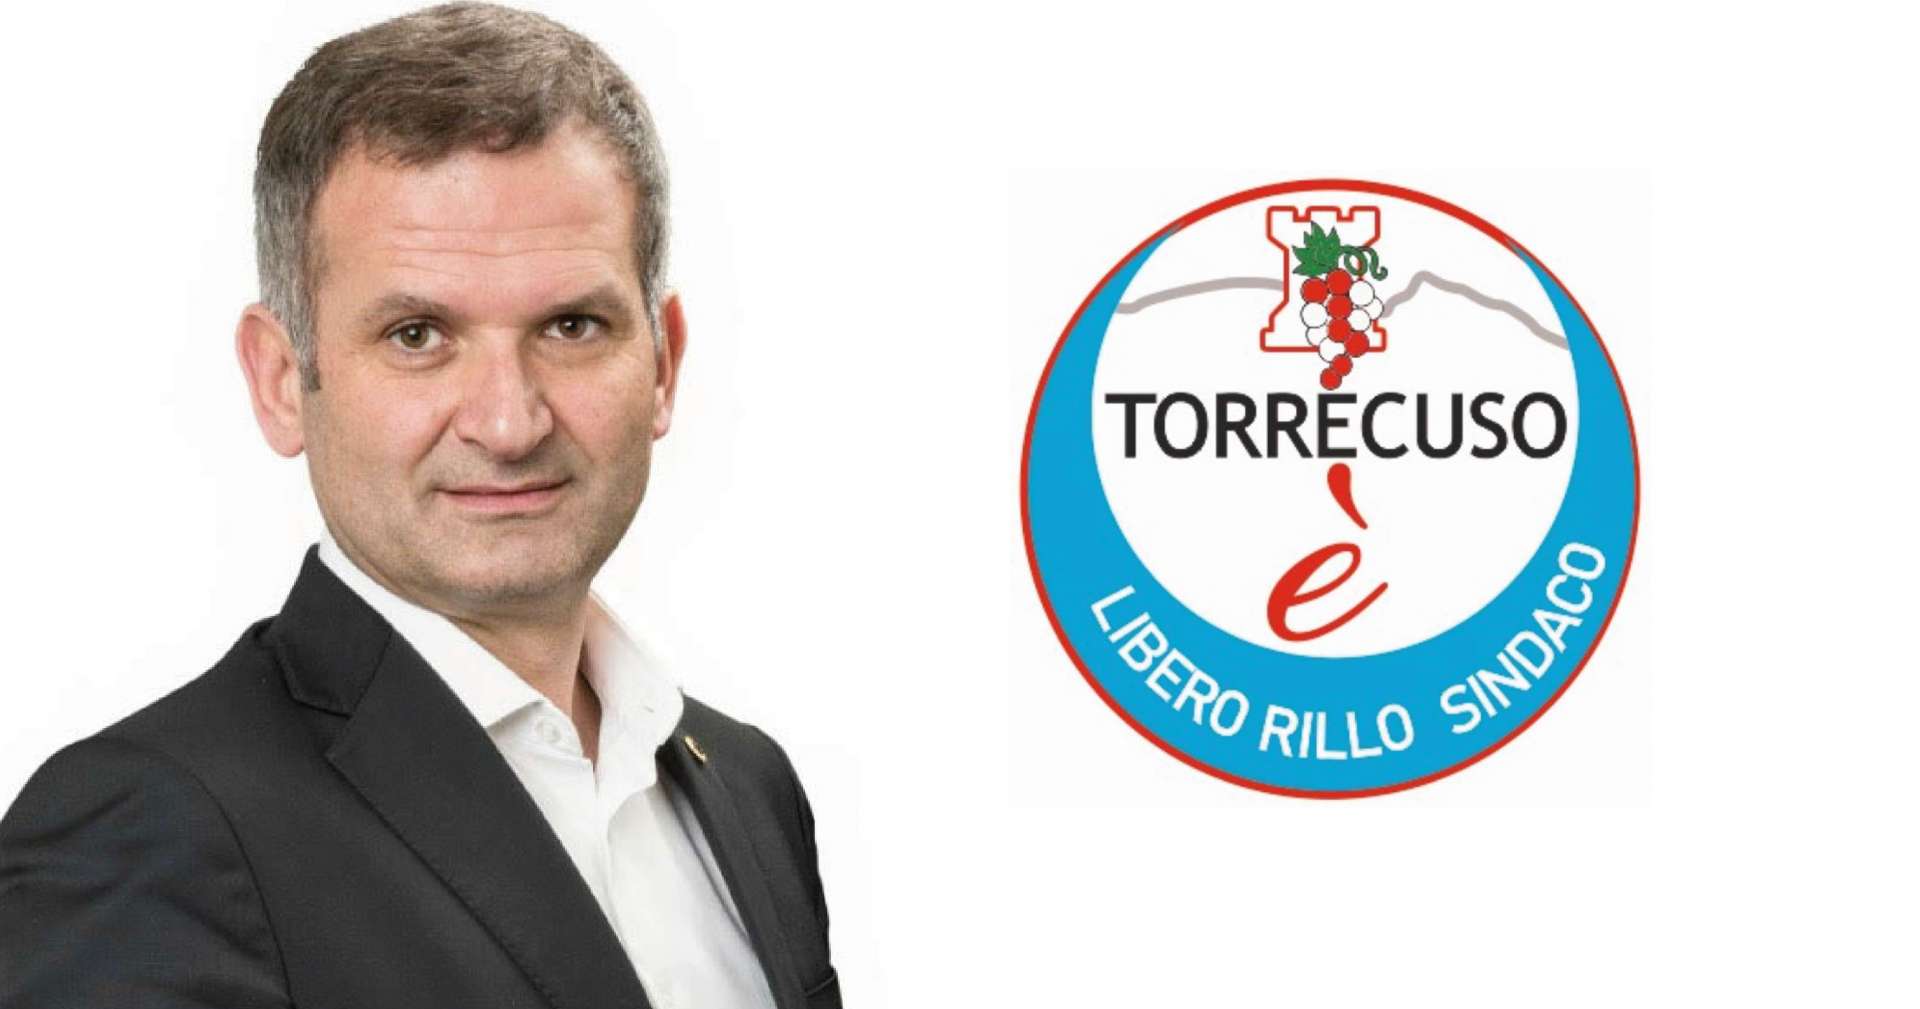 Elezioni Torrecuso, giovedi 16 maggio l’apertura della campagna elettorale di Libero Rillo